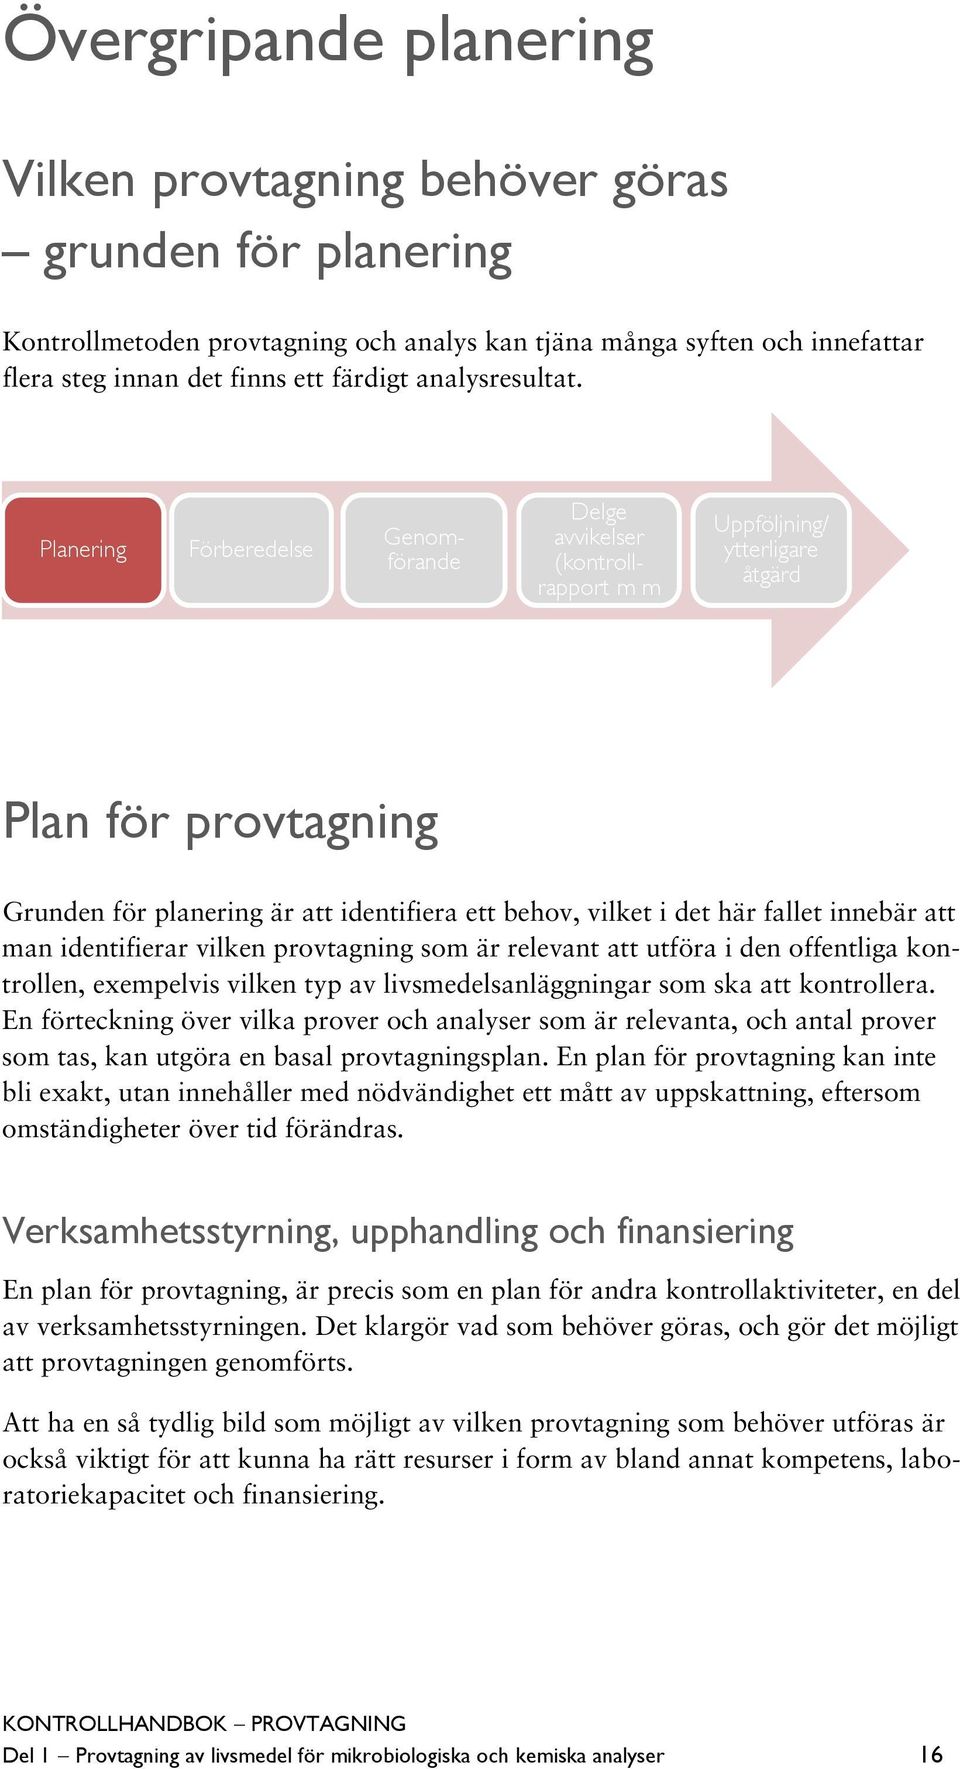 Planering Förberedelse Genomförande Delge avvikelser (kontrollrapport m m Uppföljning/ ytterligare åtgärd Plan för provtagning Grunden för planering är att identifiera ett behov, vilket i det här